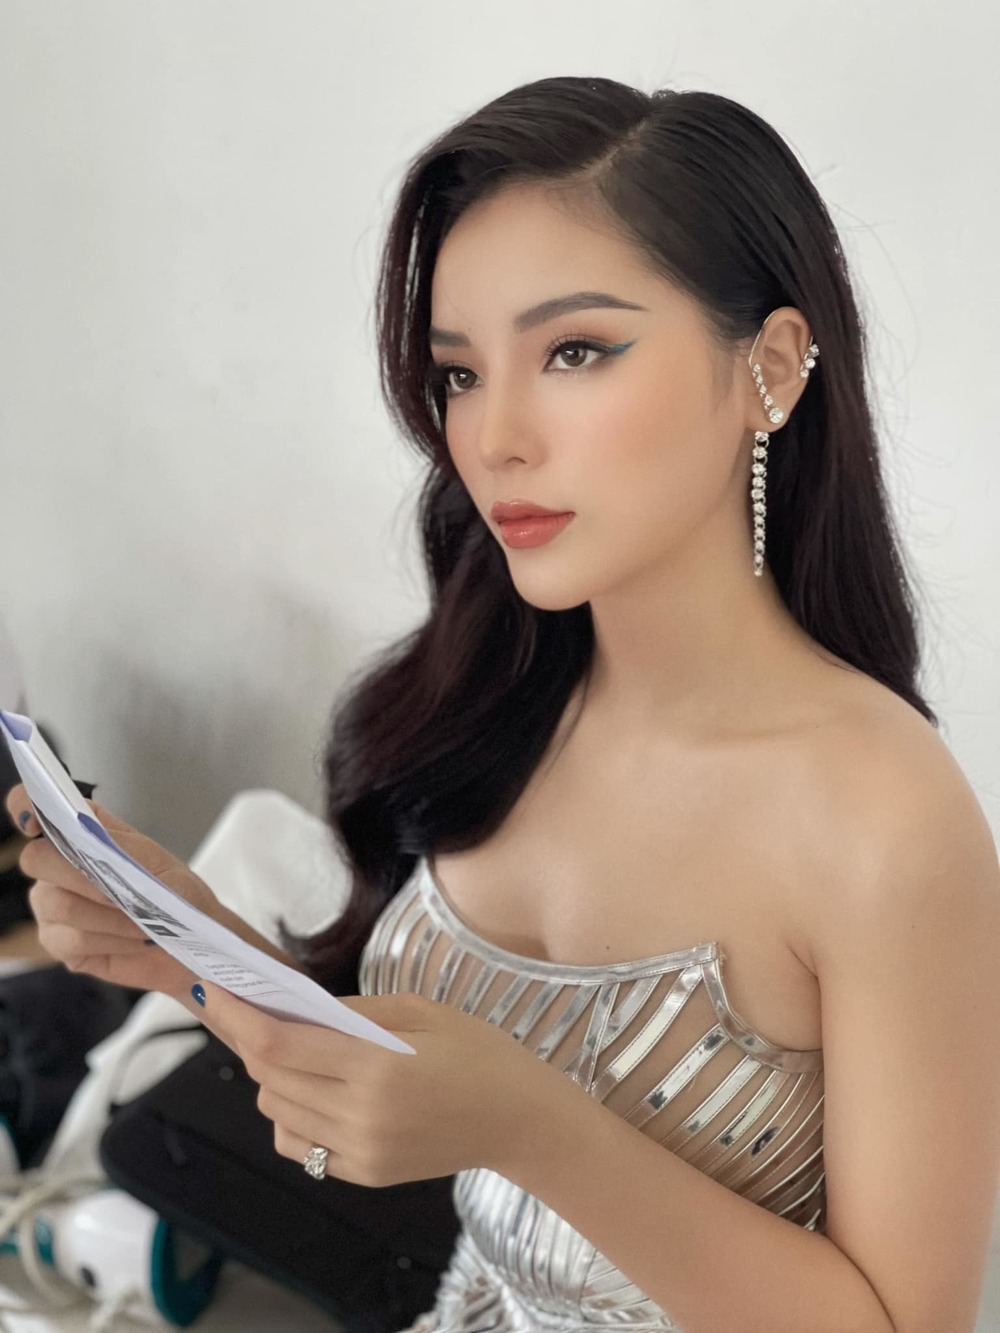  
Hiện tại, thông tin Kỳ Duyên dự thi Hoa hậu Hoàn vũ Việt Nam 2021 vẫn chưa được xác thực. (Ảnh: FBNV)